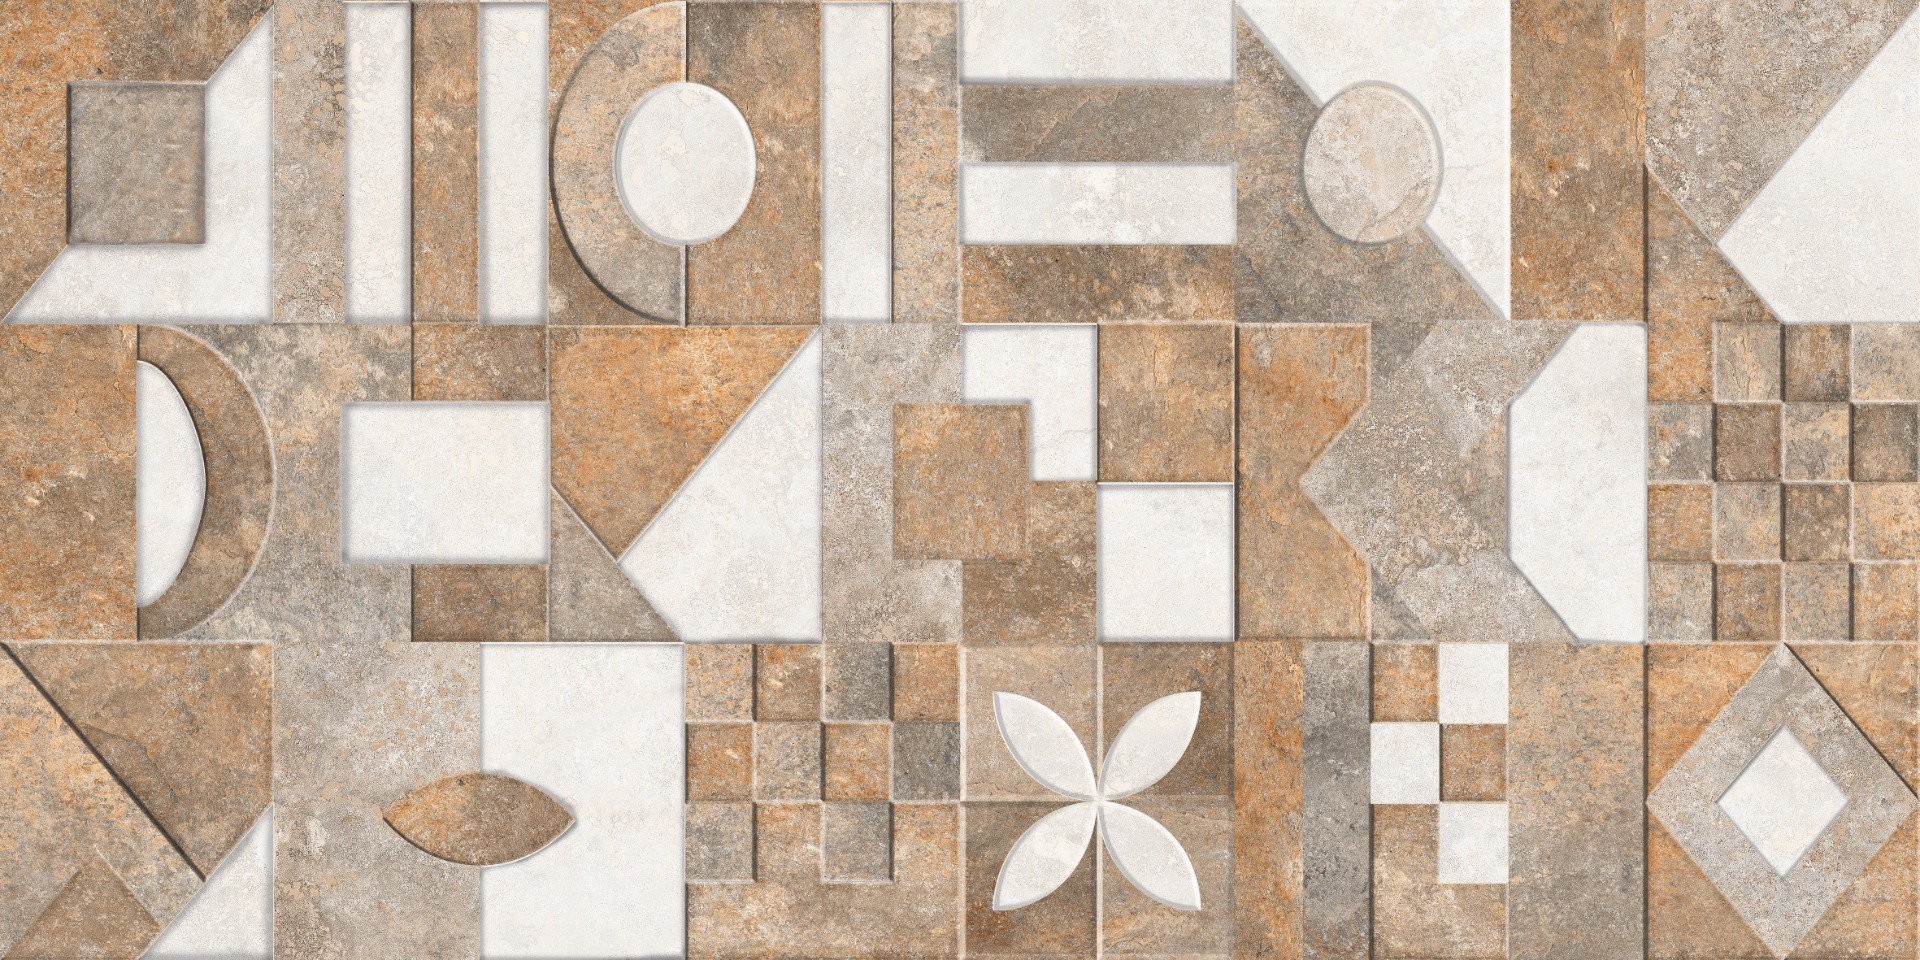 Geometric Tiles for Bathroom Tiles, Living Room Tiles, Bedroom Tiles, Accent Tiles, Hospital Tiles, High Traffic Tiles, Bar/Restaurant, Commercial/Office, Outdoor Area